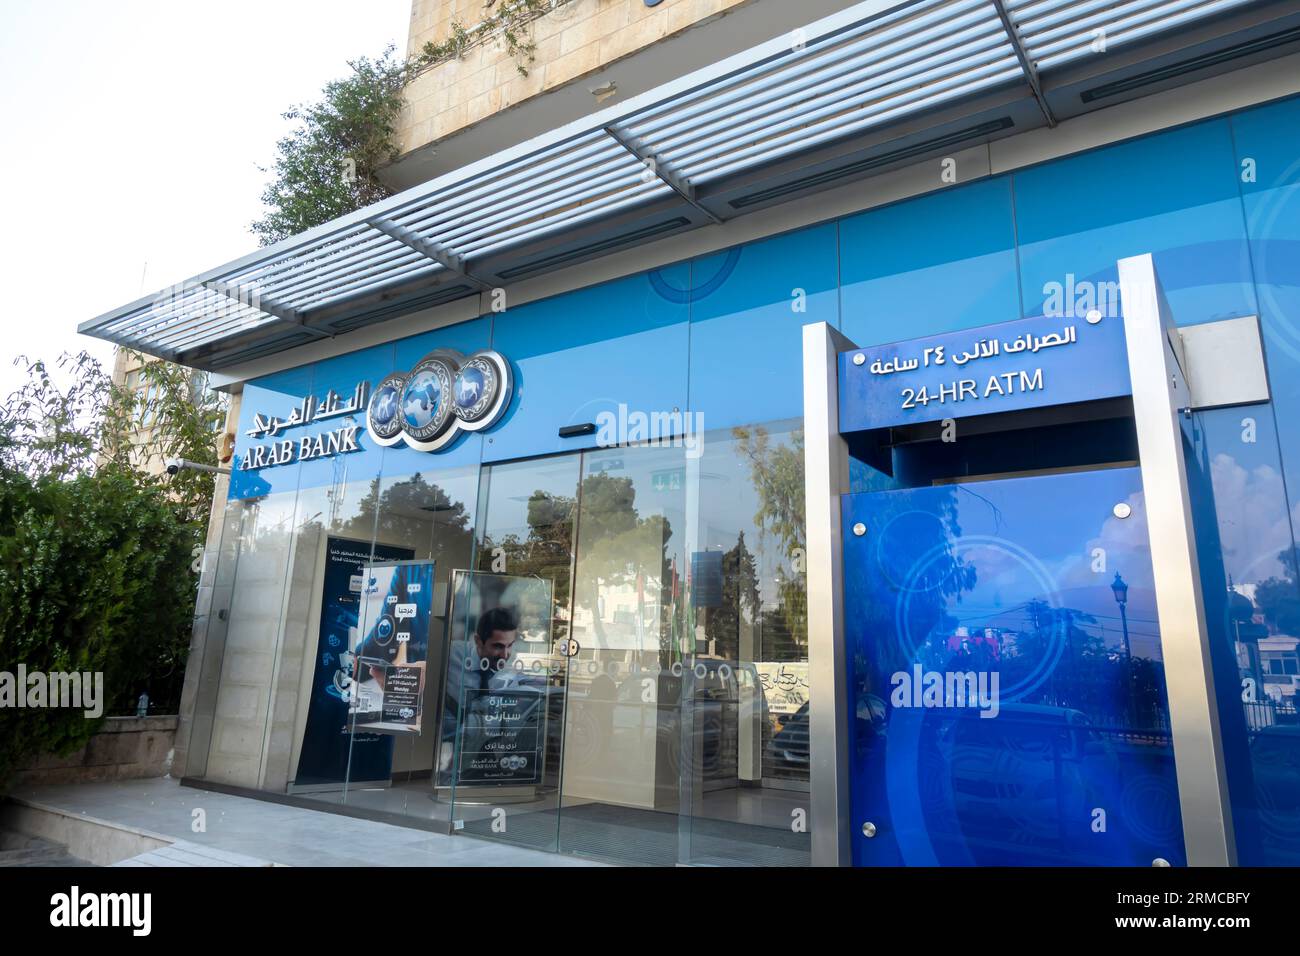 ARAB BANK und ATM, Filiale in amman Jordanien Stockfoto